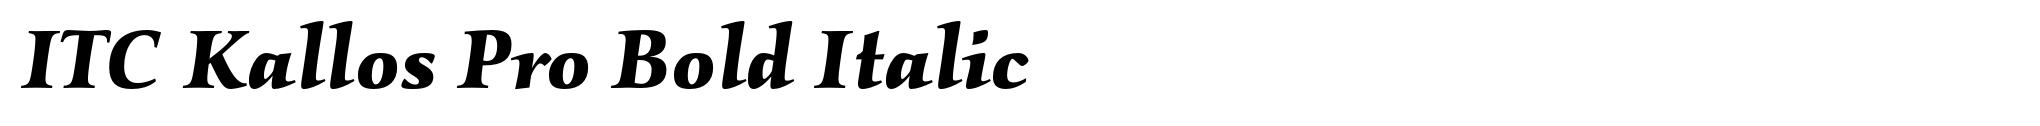 ITC Kallos Pro Bold Italic image